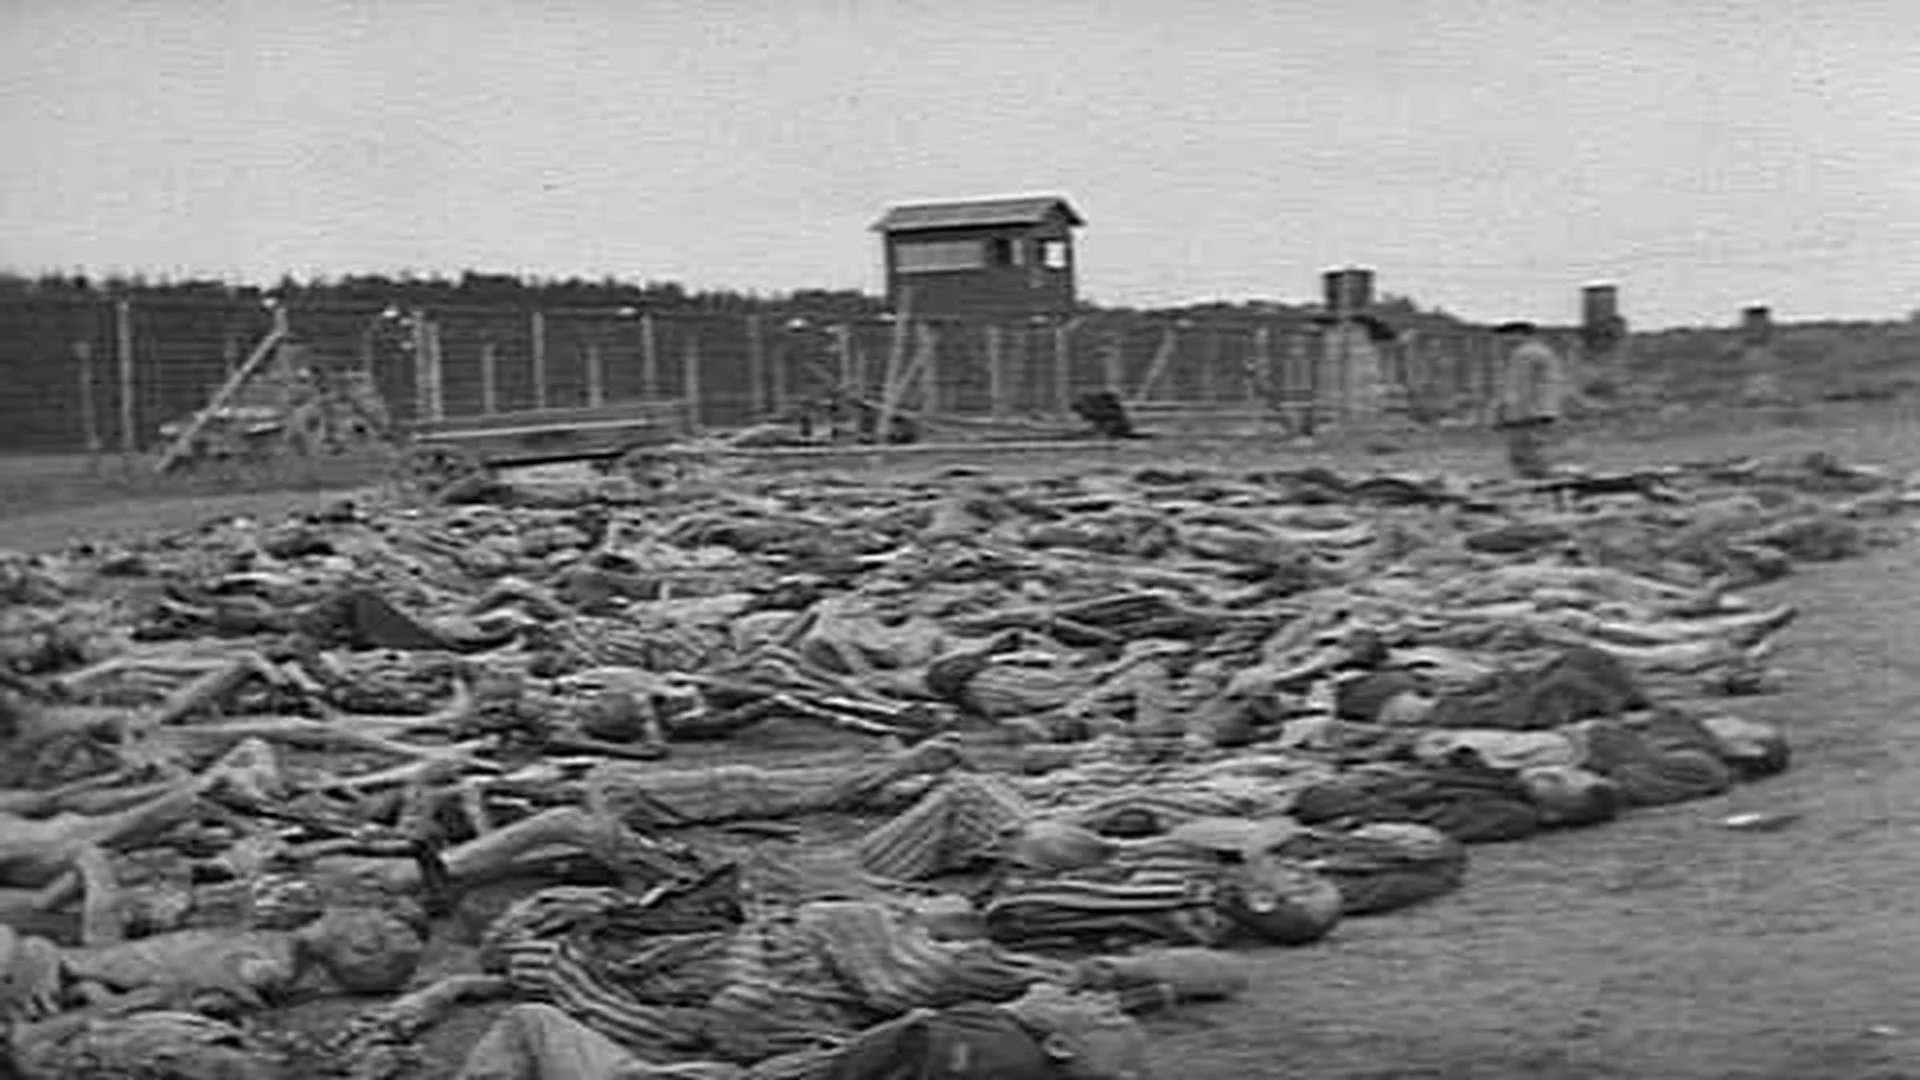 dead-bodies-tortured-jews-found-footage-086843154_prevstill.jpeg